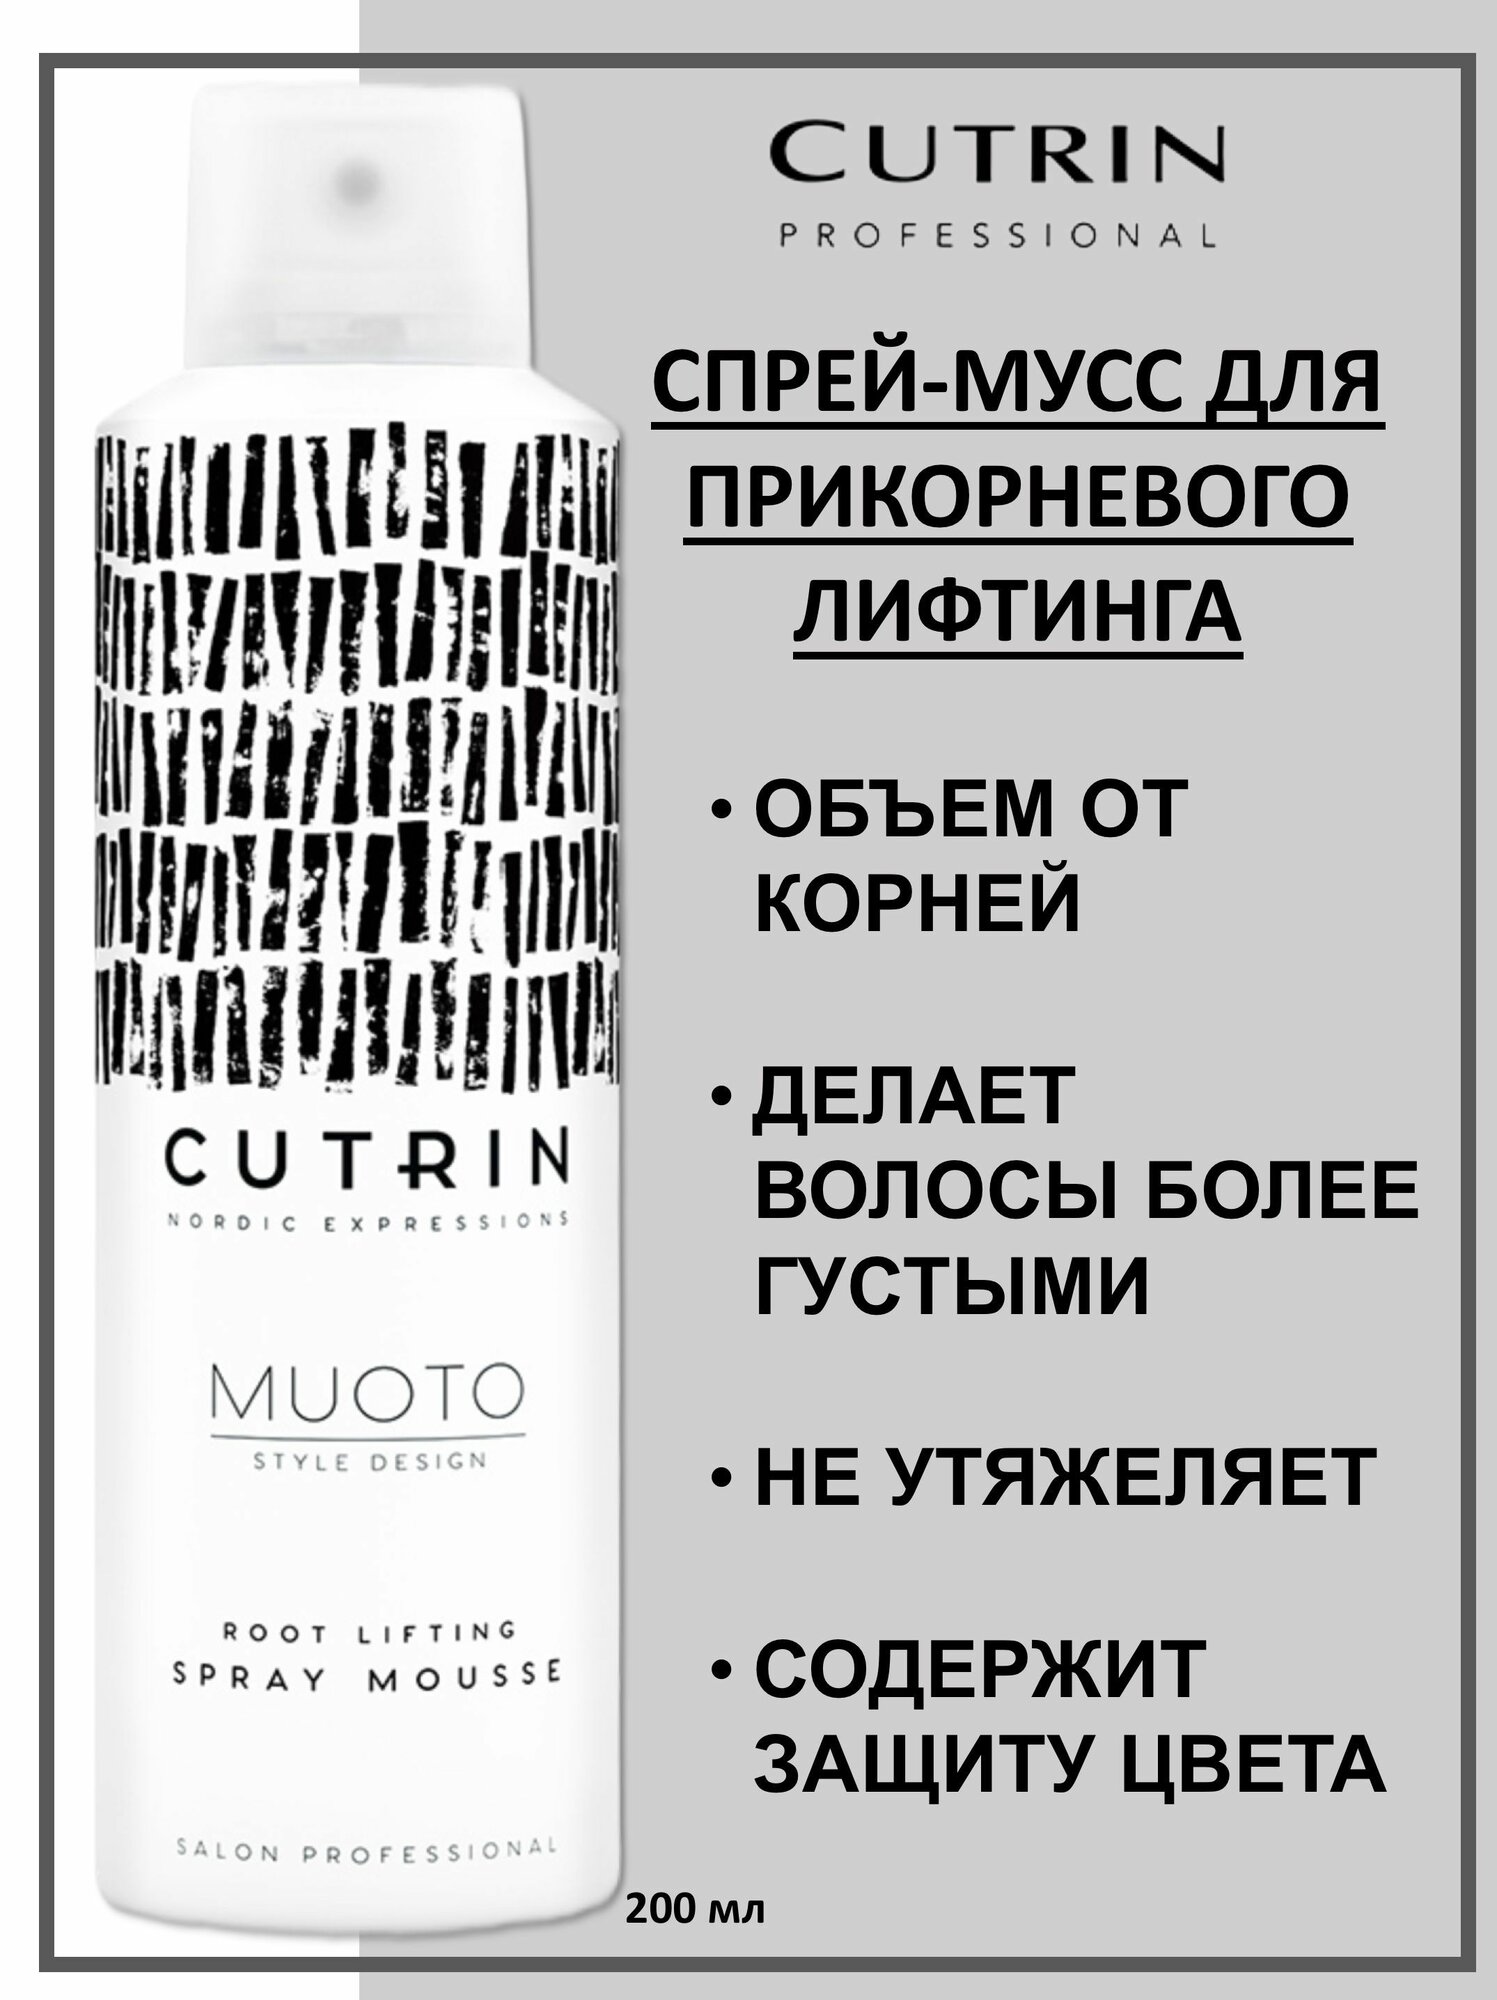 Cutrin Спрей-мусс для прикорневого объема 200 мл (Cutrin, ) - фото №6